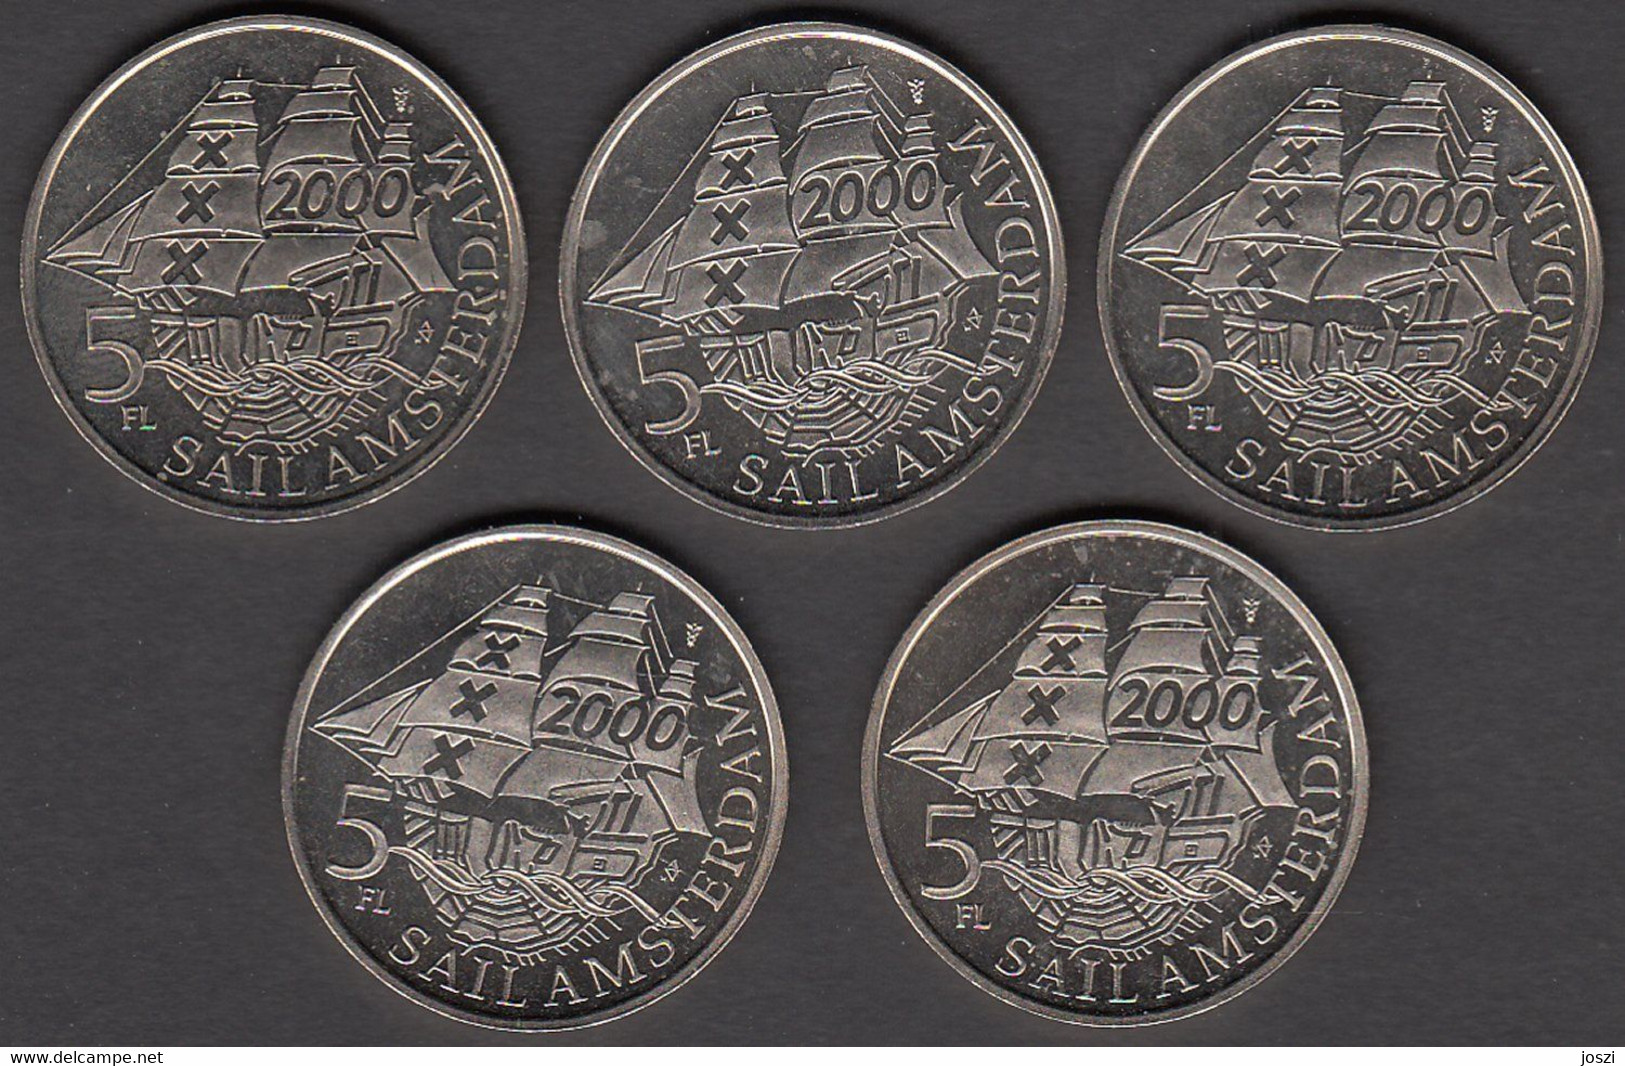 Nederland Set Penningen (5) Sail Amsterdam 2000 5 Florijn - Souvenirmunten (elongated Coins)